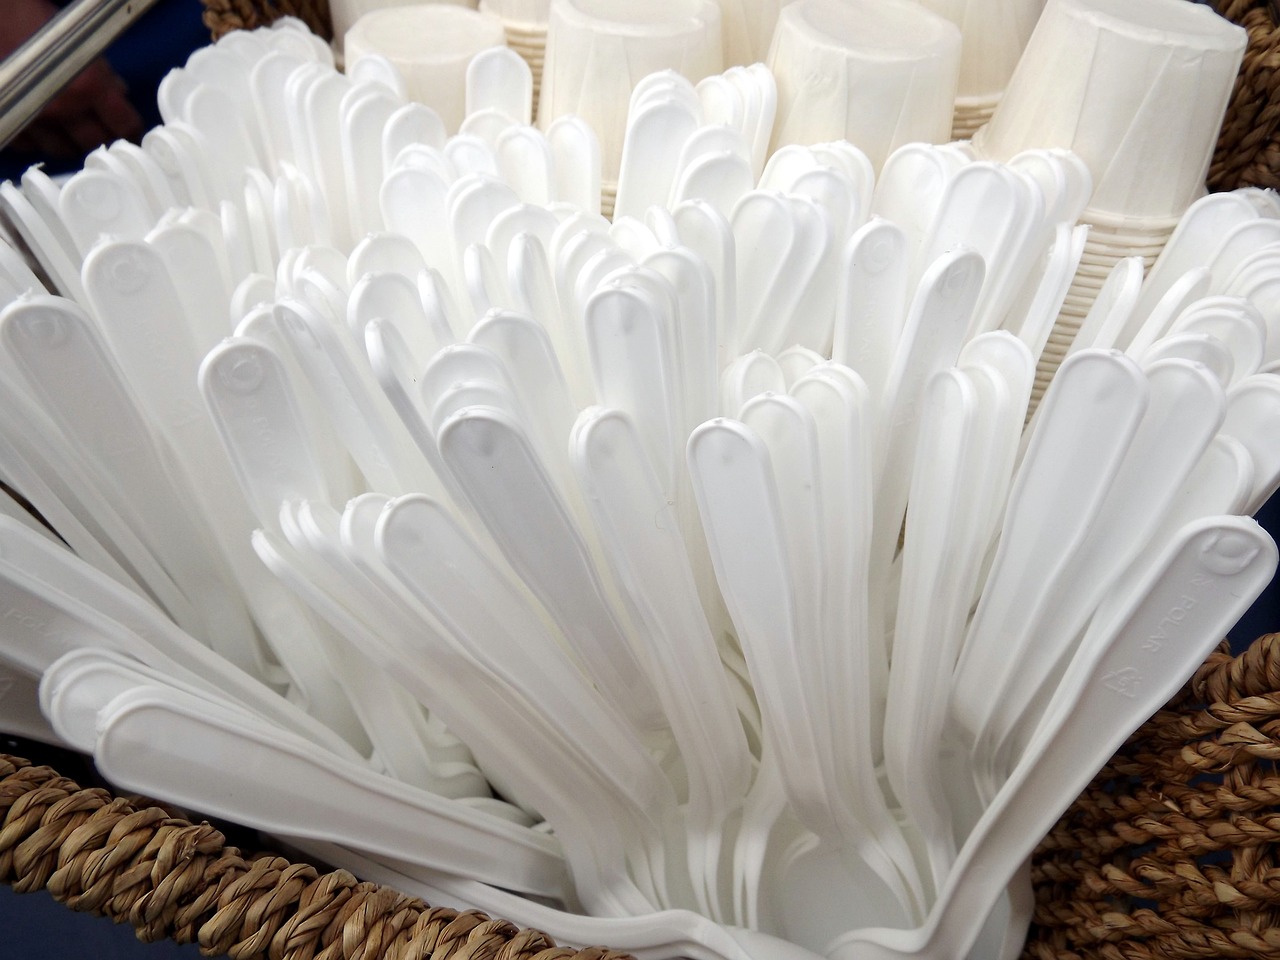 Mulai 1 Agustus, 8 tempat umum tidak akan menyediakan peralatan makan sekali pakai yang terbuat dari plastik biodegradable (PLA).  (Sumber foto : Pixabay)